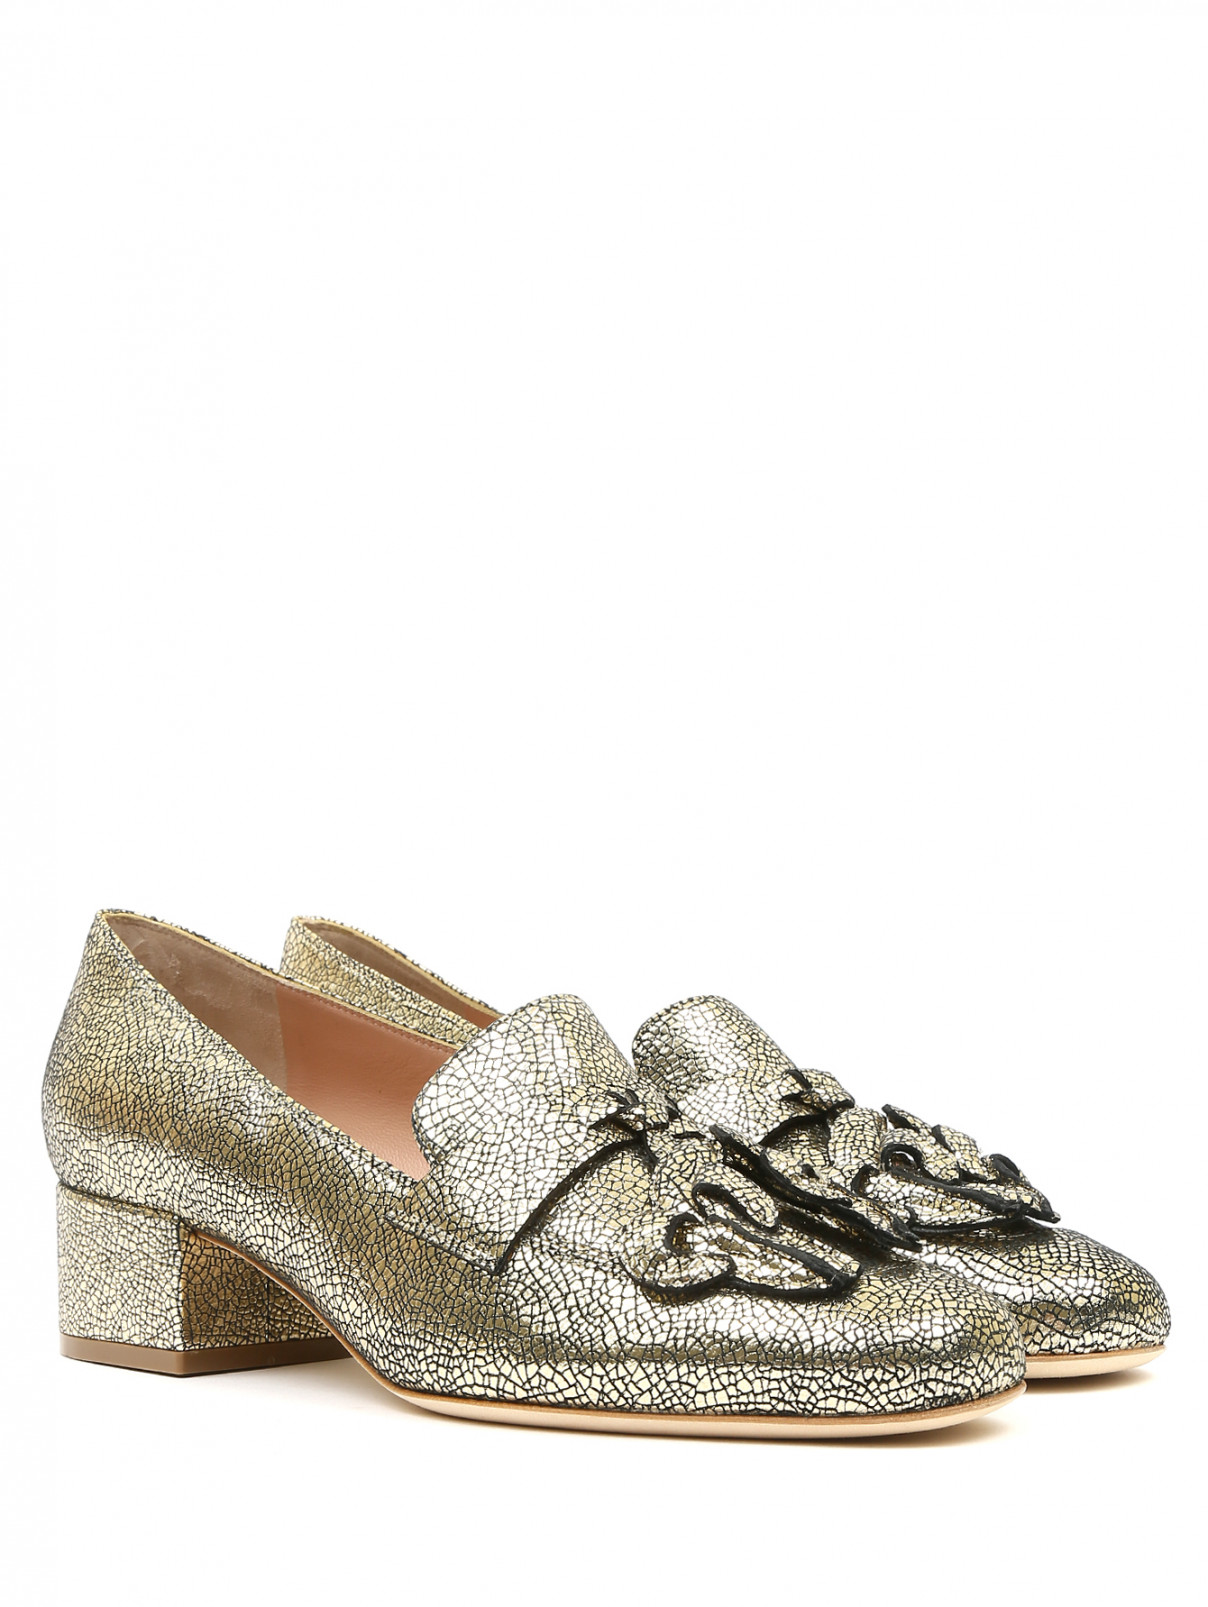 Туфли из фактурной кожи на низком каблуке Alberta Ferretti  –  Общий вид  – Цвет:  Золотой